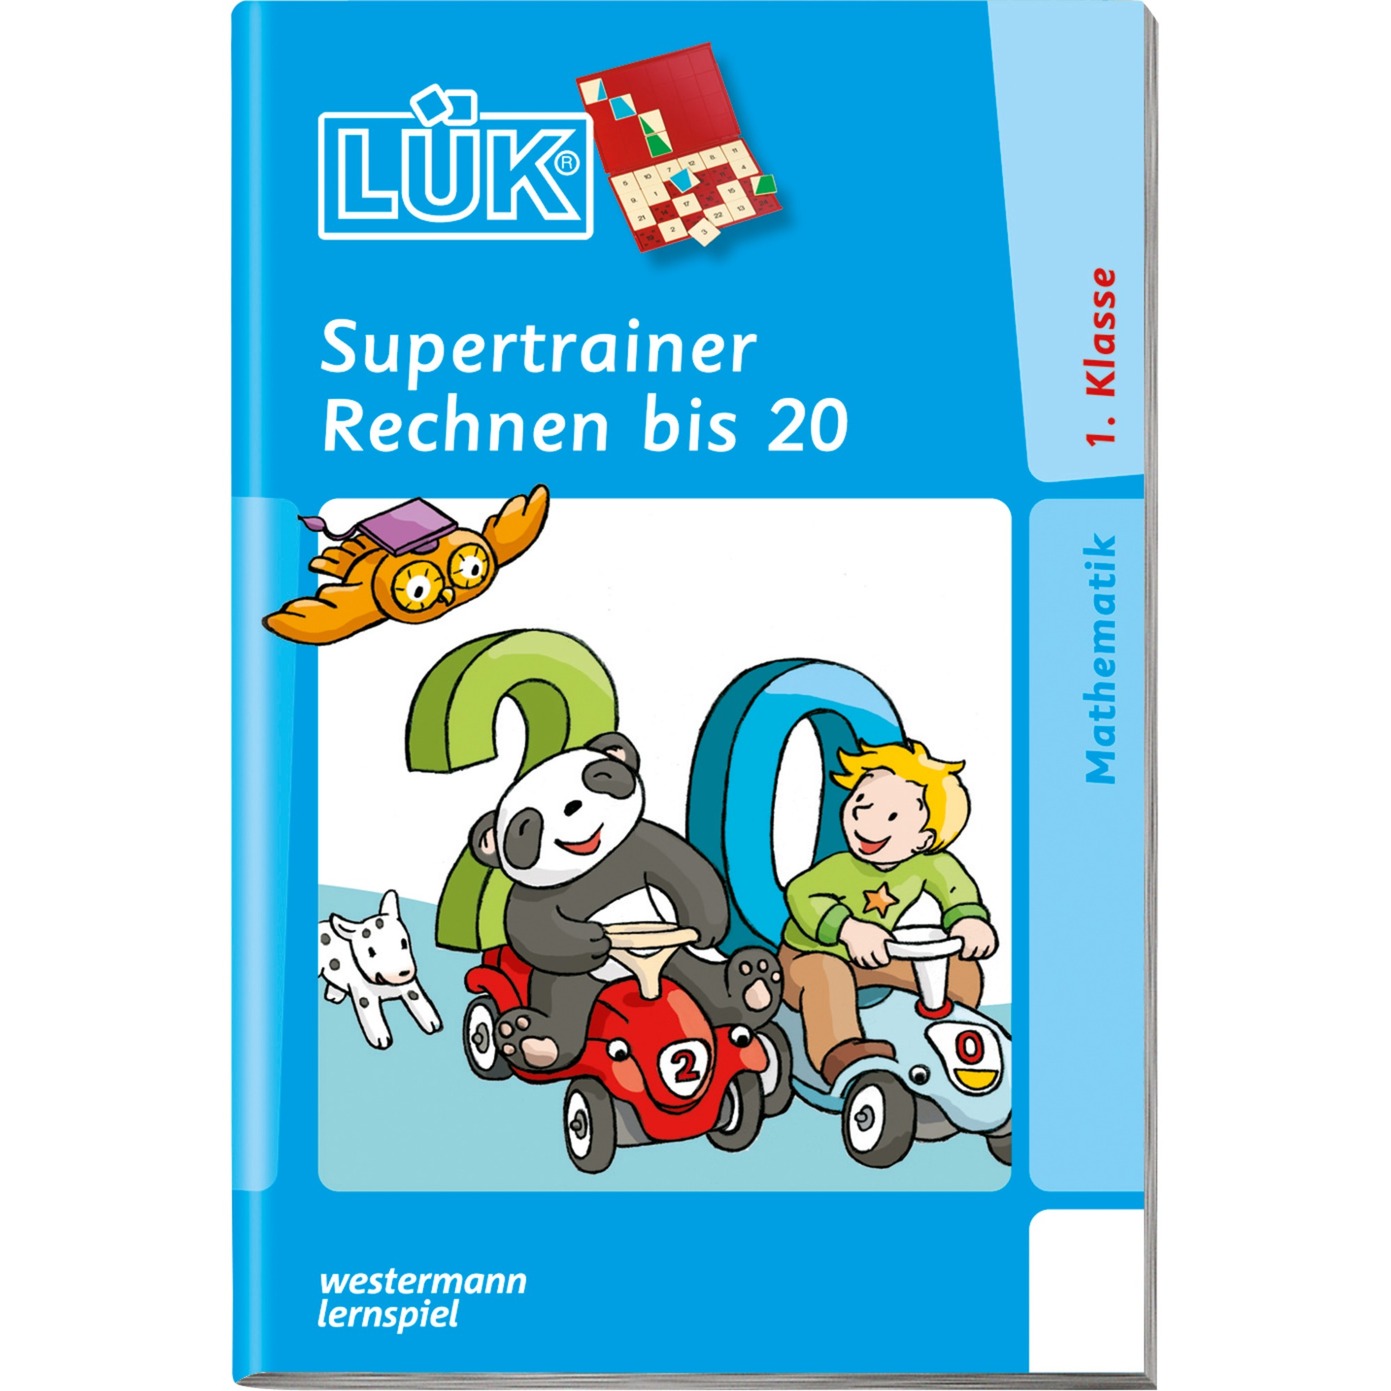 Supertrainer Rechnen bis 20 książka dla dzieci, Książki edukacyjne